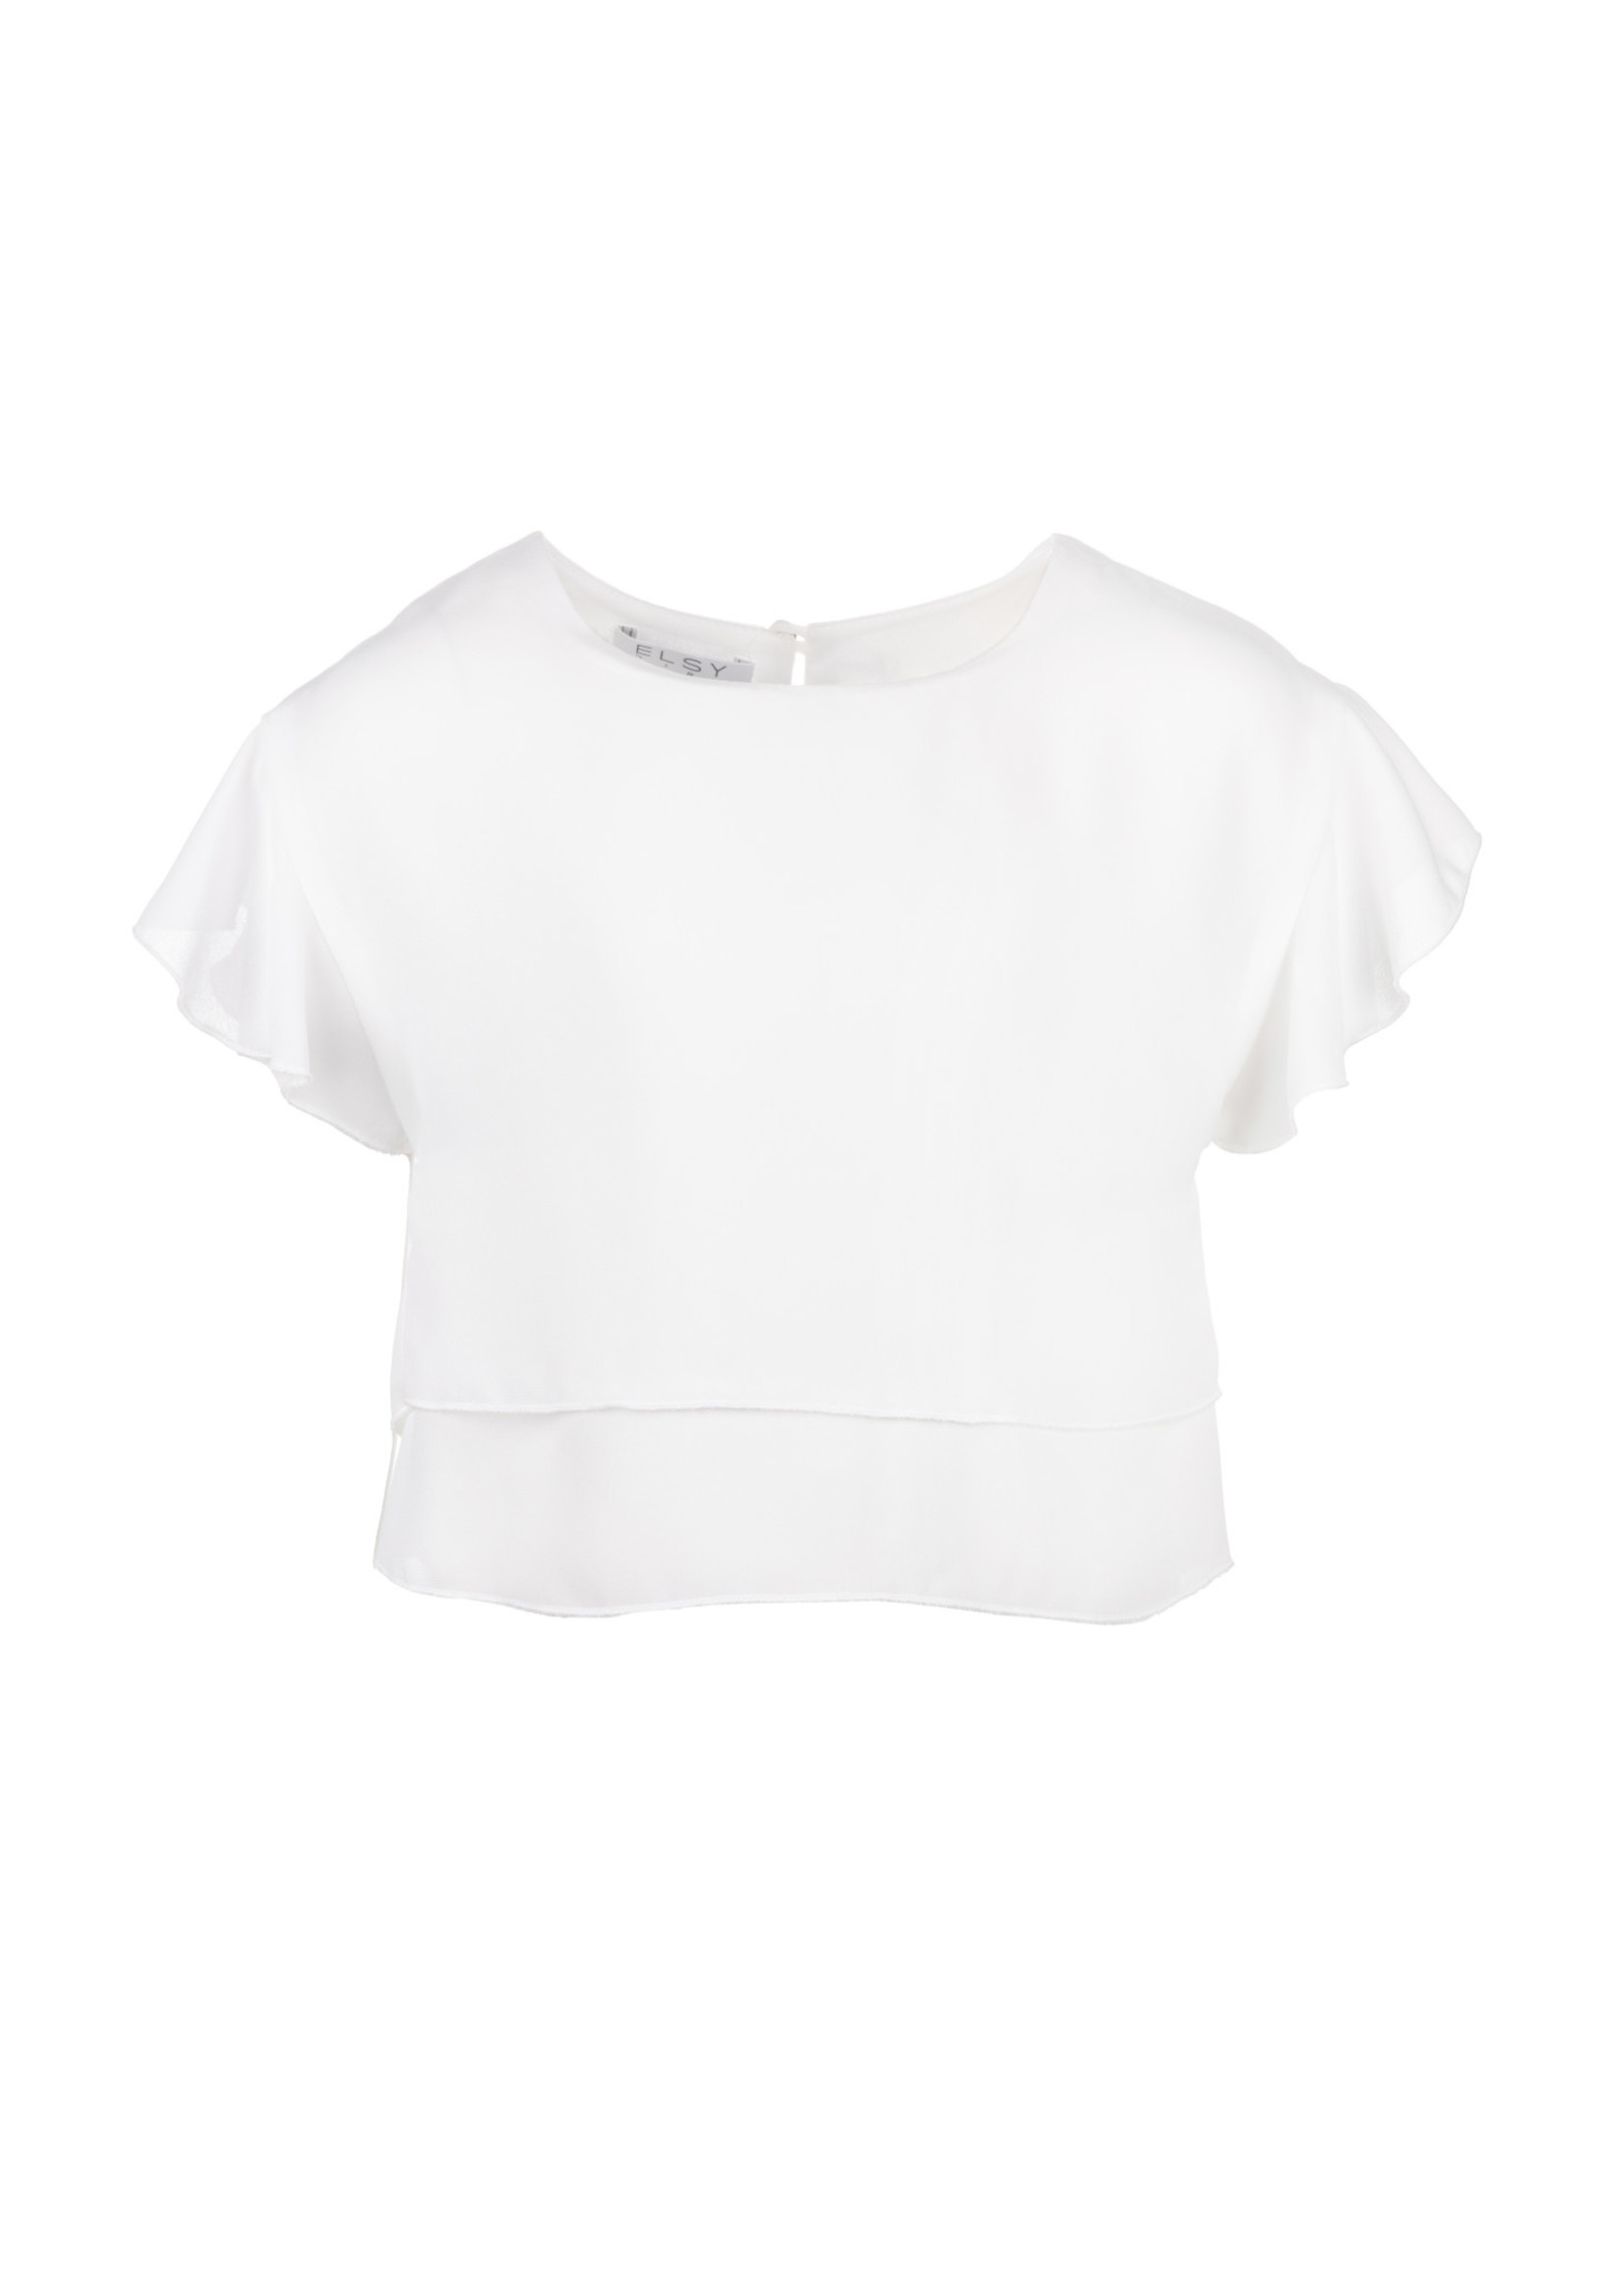 Elsy Elsy blouse white - Baltimore 4711